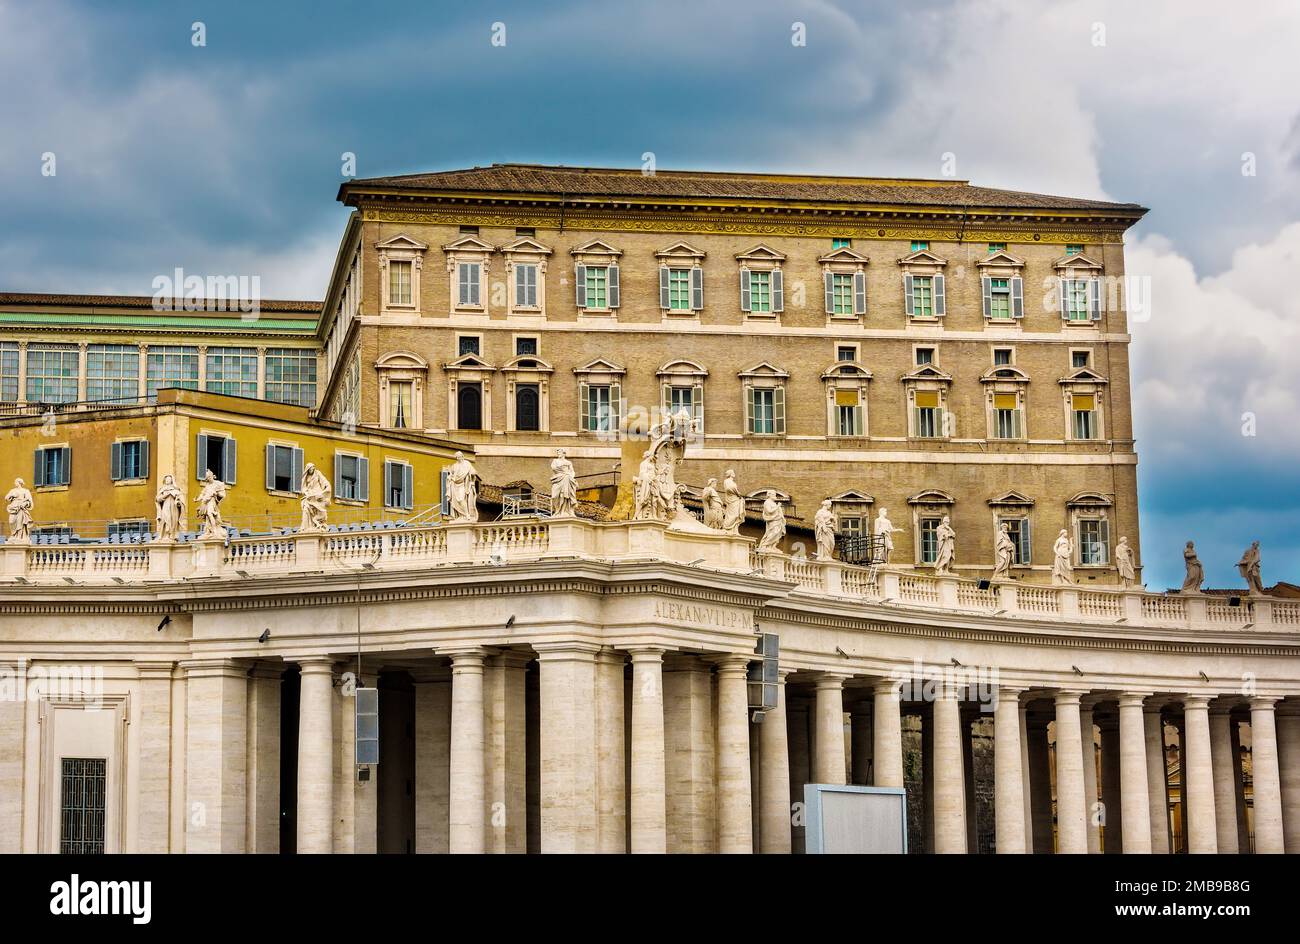 Ciudad del Vaticano, Estado de la Ciudad del Vaticano - 10 de junio de 2016: El Palacio Apostólico, residencia oficial del Papa, también conocido como el Palacio Papal. Foto de stock